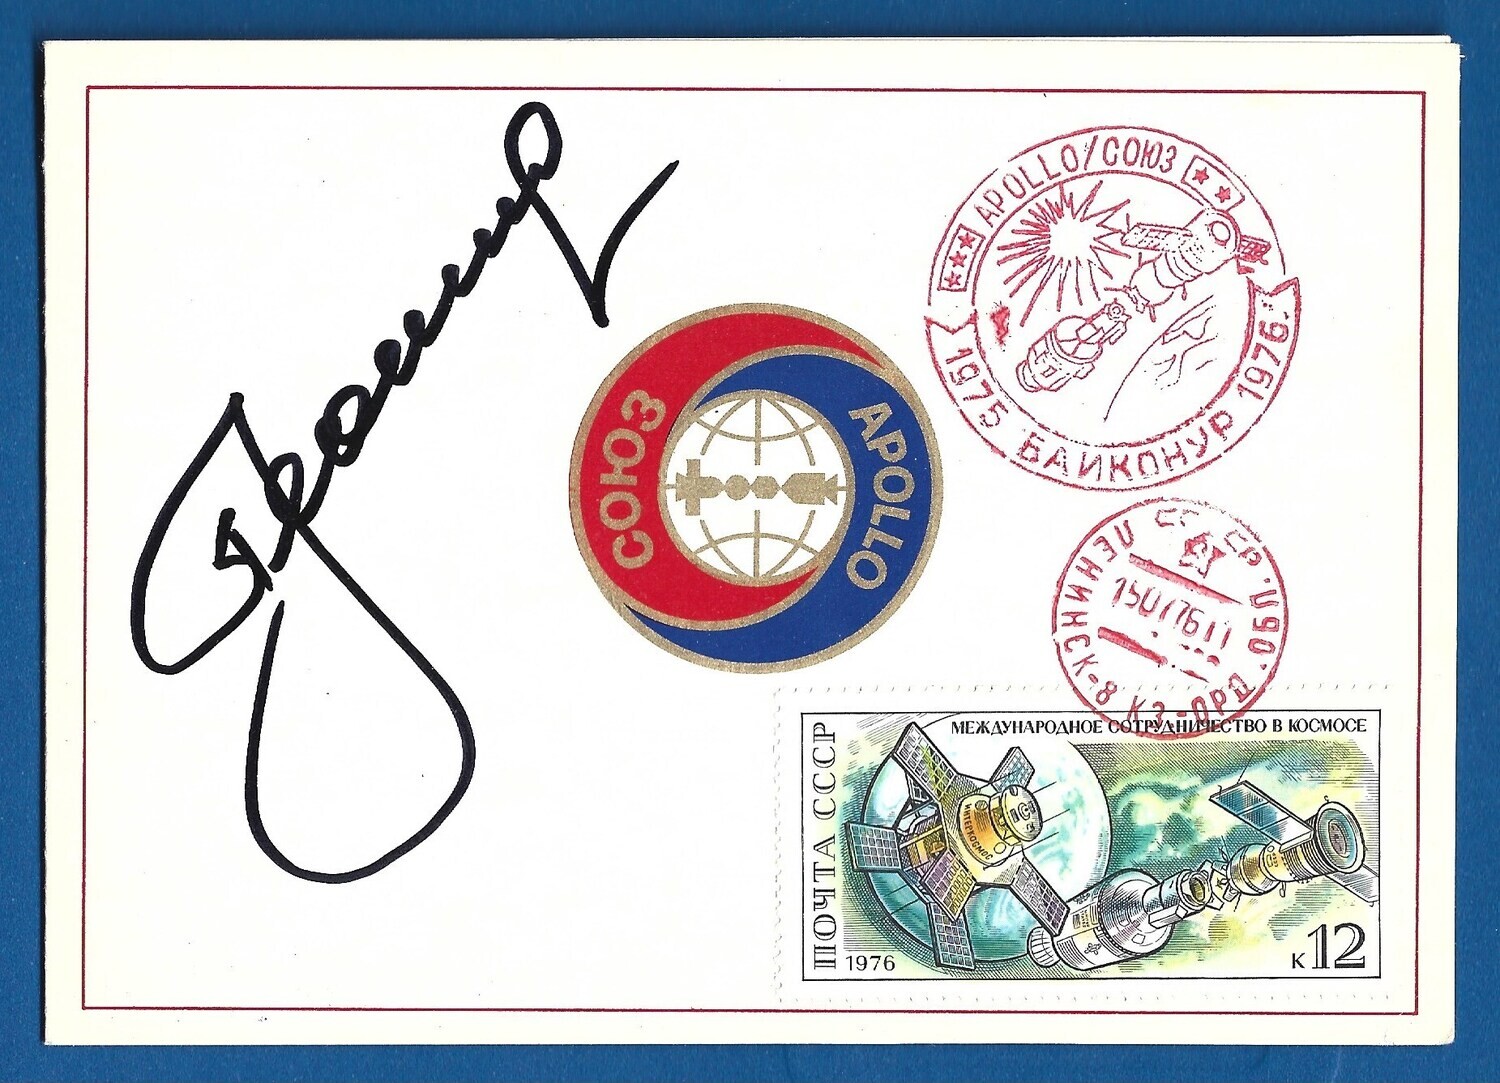 Alexey Leonov Soviet cosmonaut signed postcard